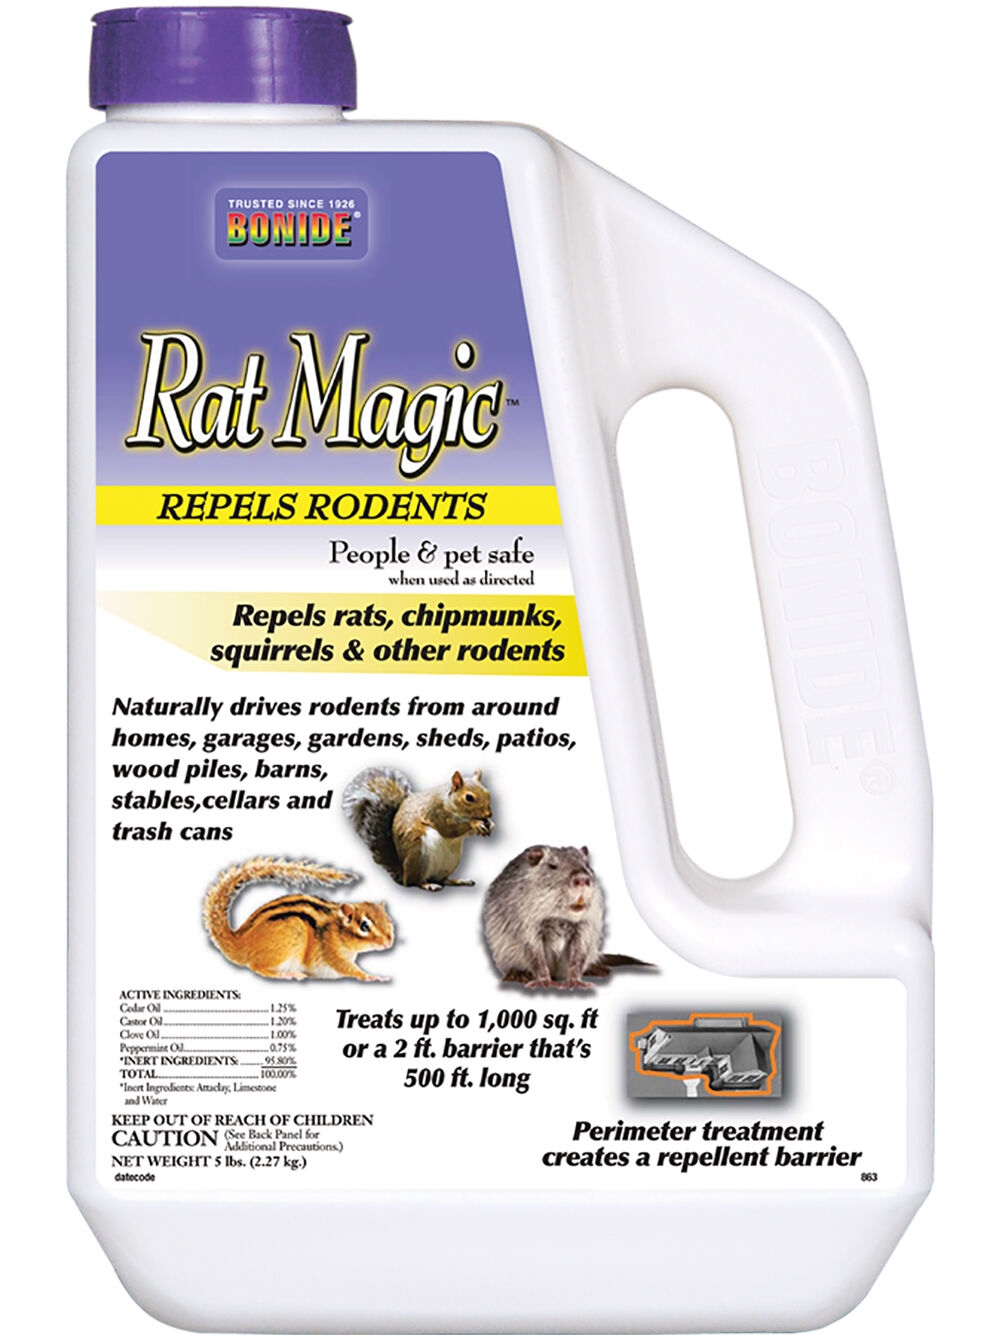 Rat Magic Repellent, 5 Lbs.